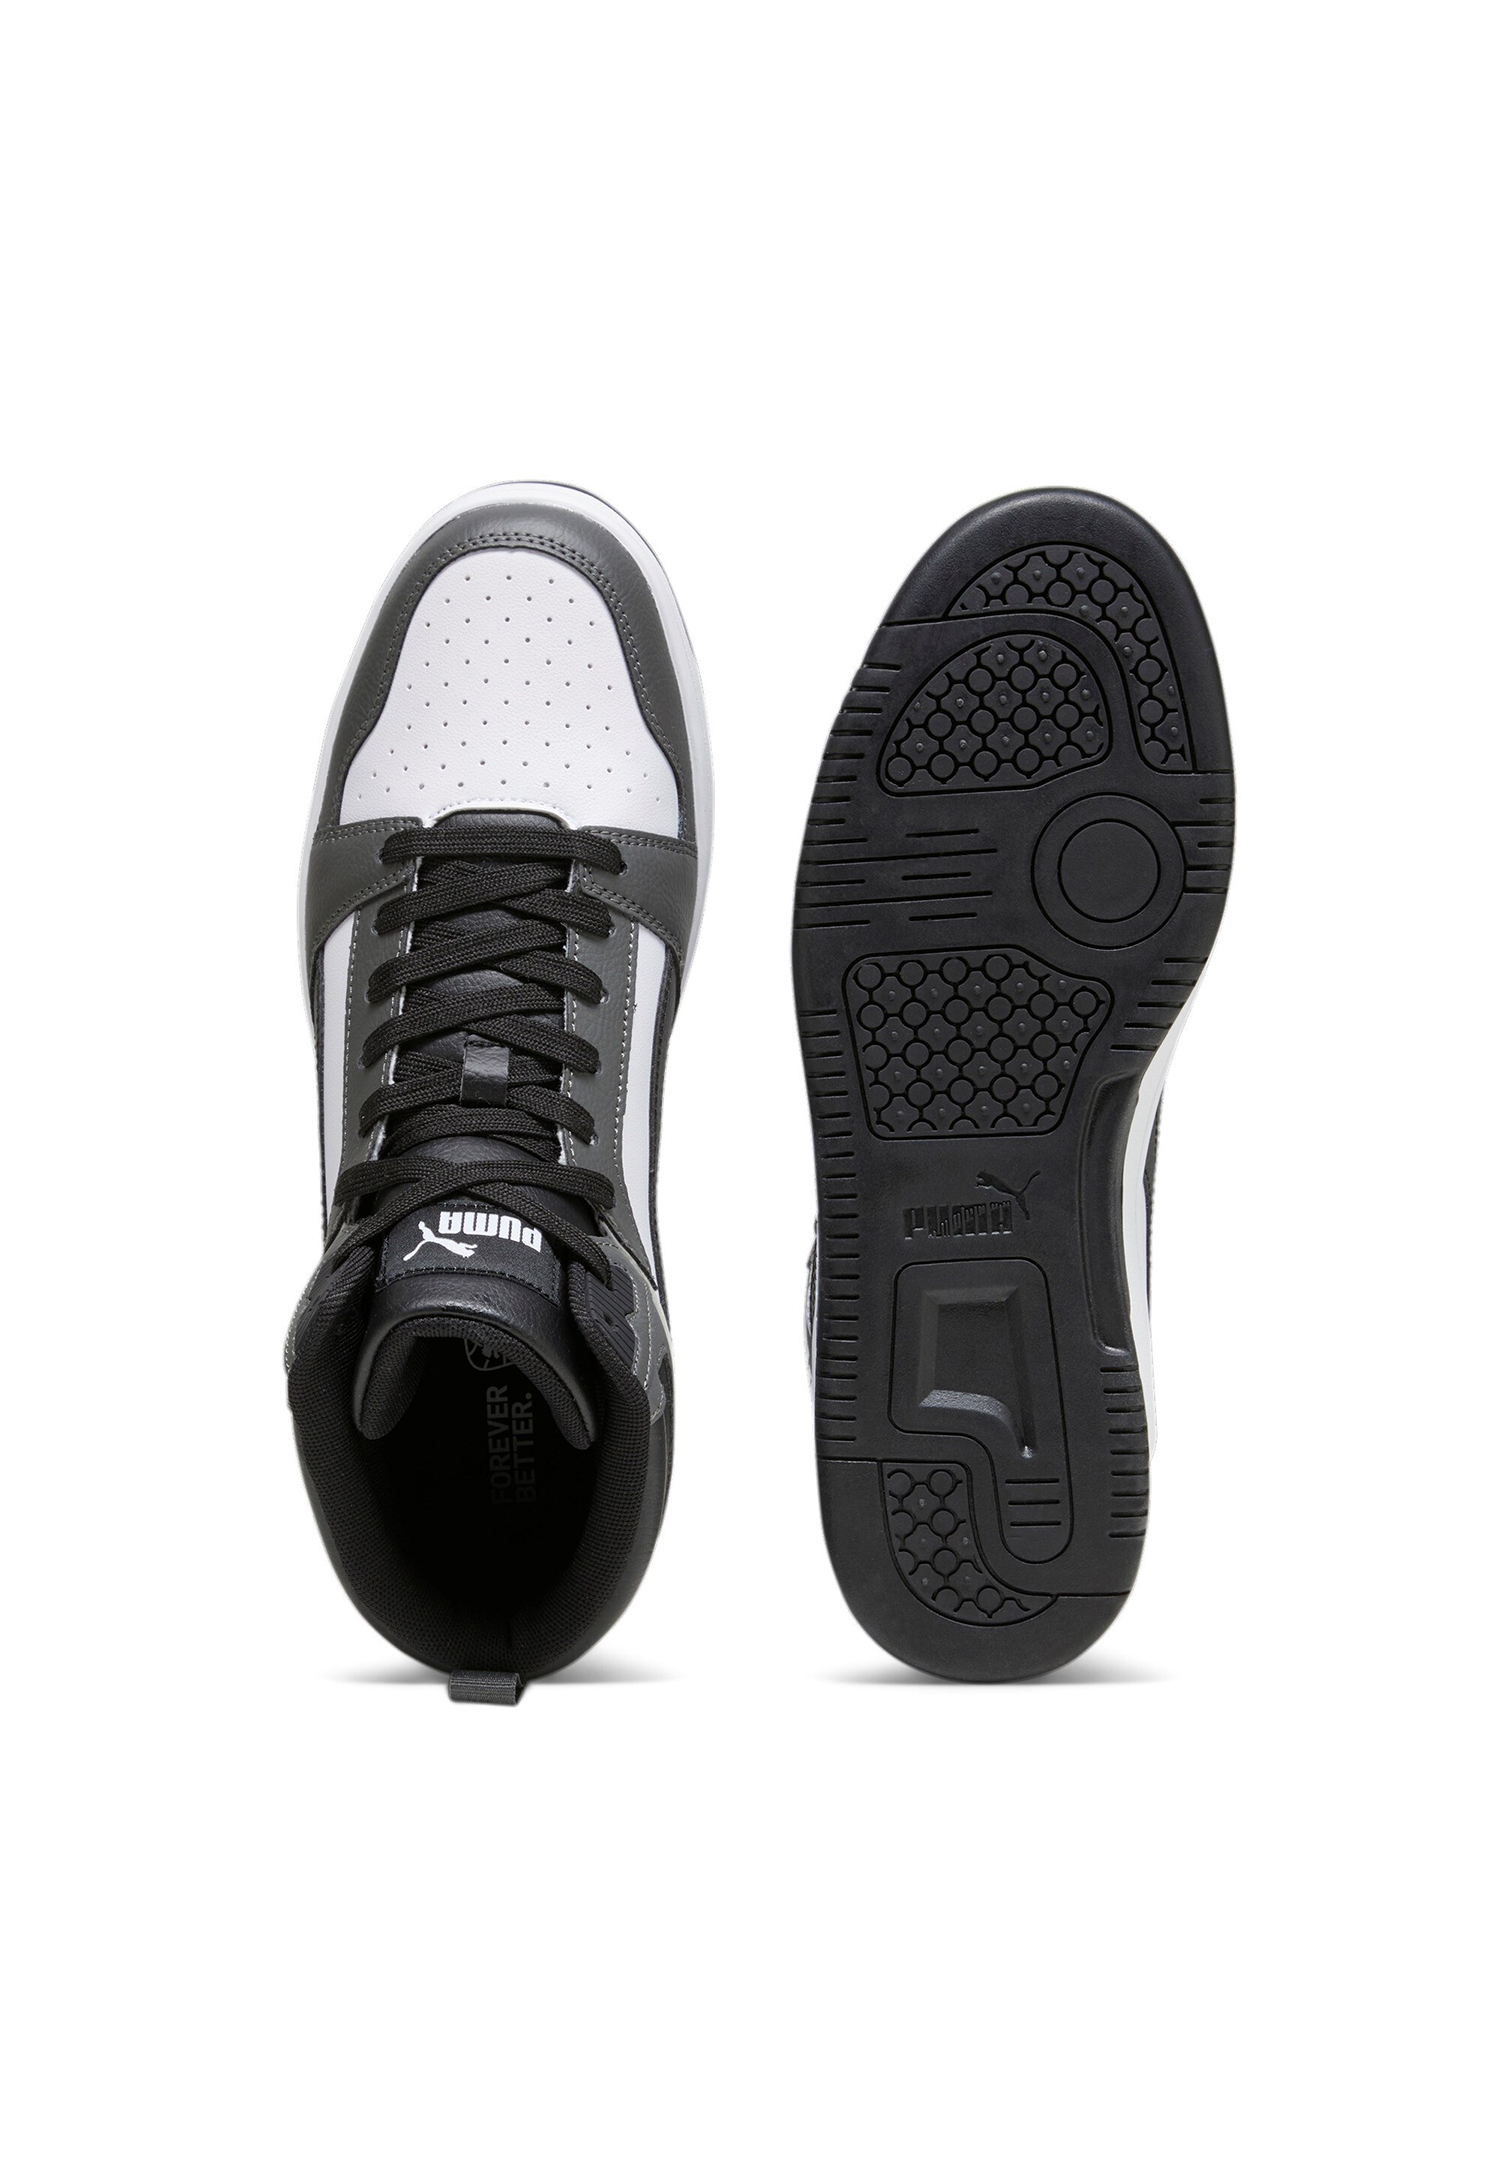 Puma Rebound v6 Hoher Sneaker Stiefel Boots Herren Sneaker 392326 03 weiss grau schwarz